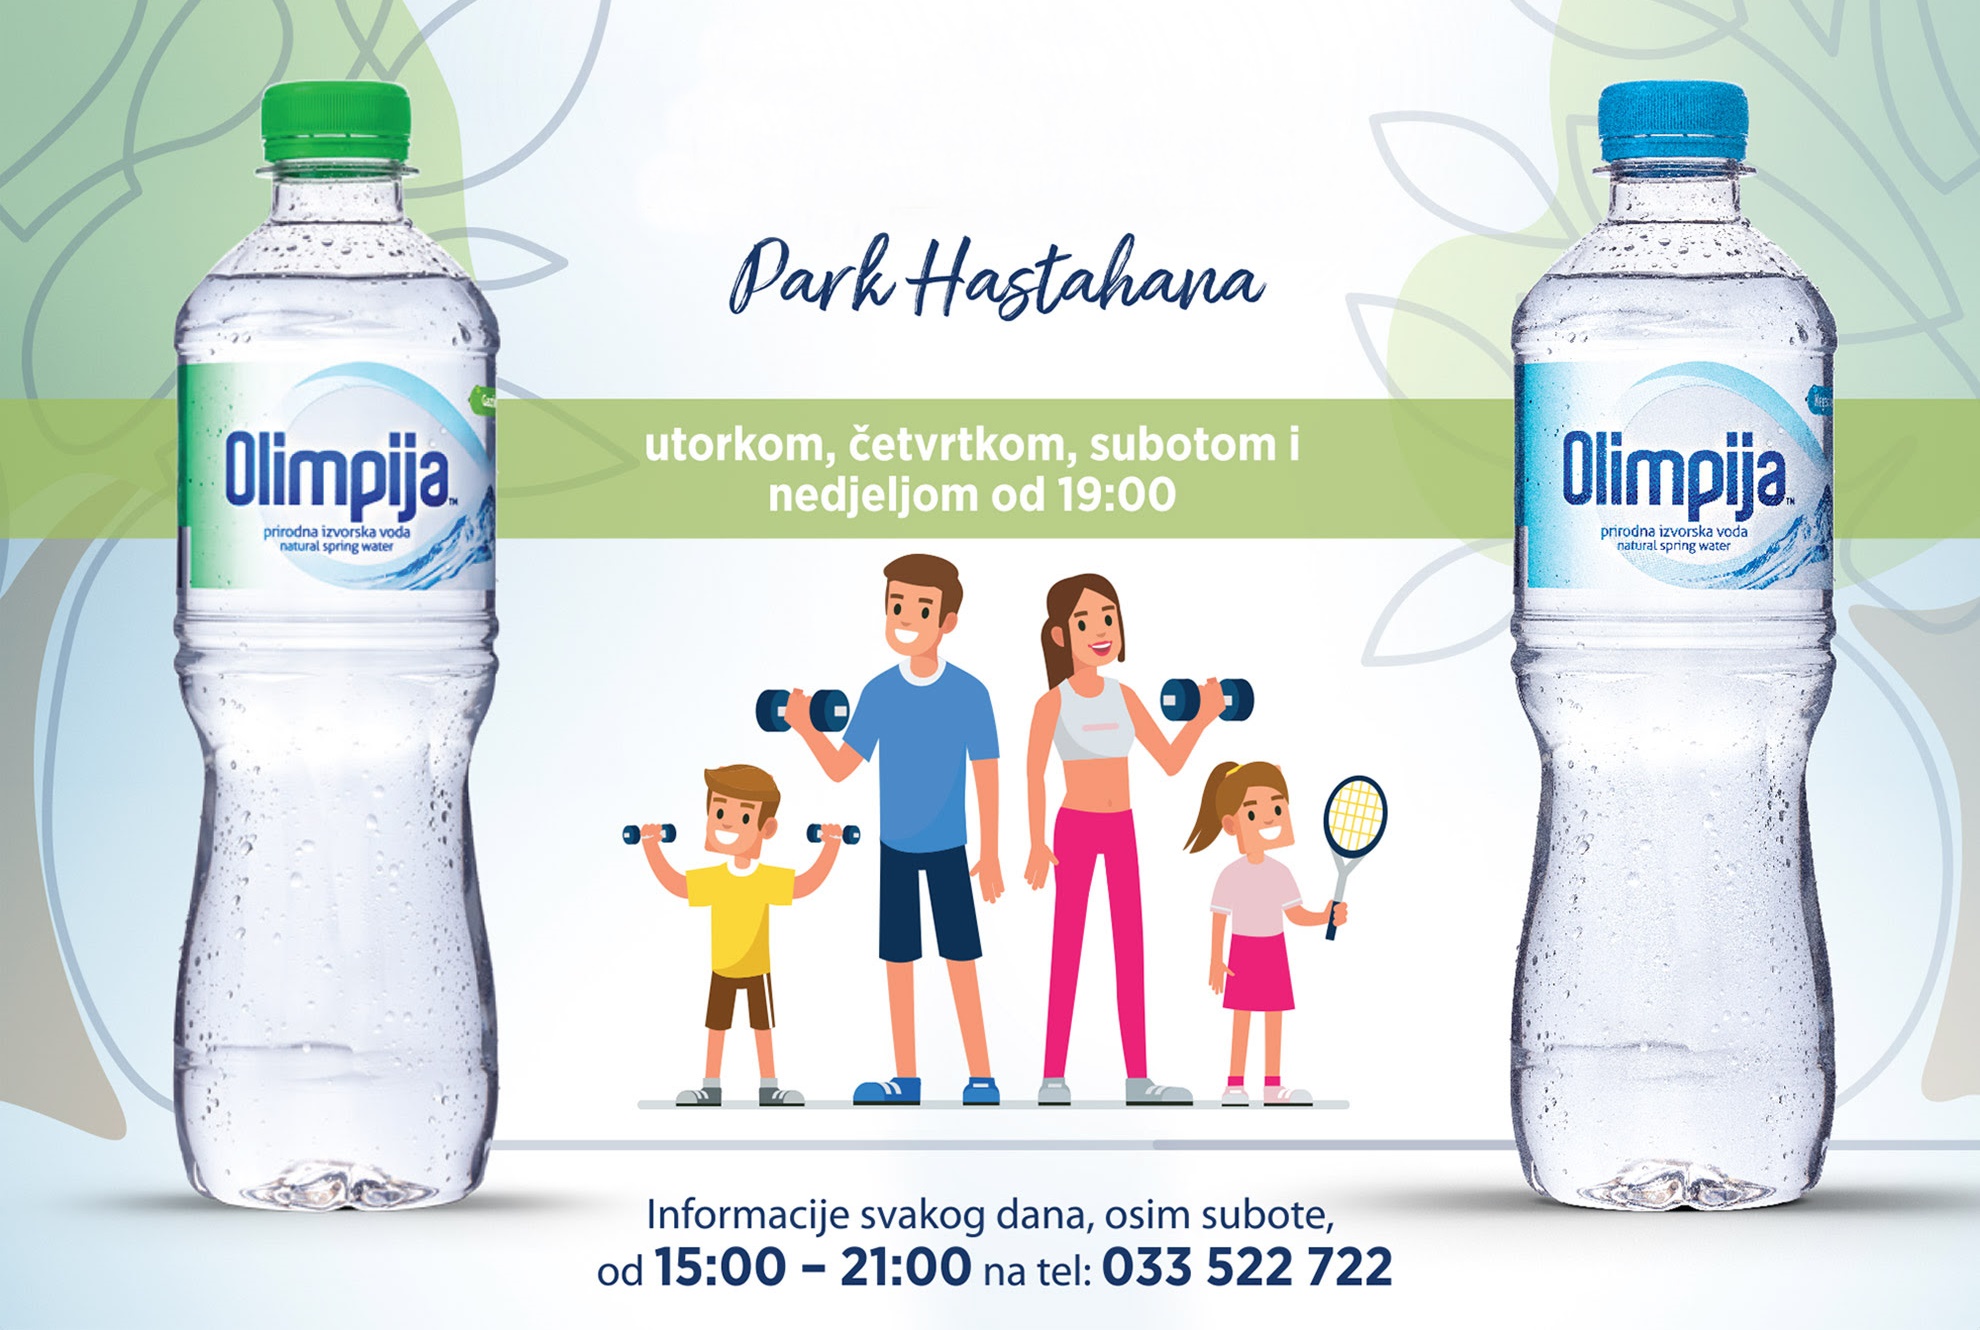  Rekreacija za cijelu porodicu – Olimpija fitness u parku Hastahana